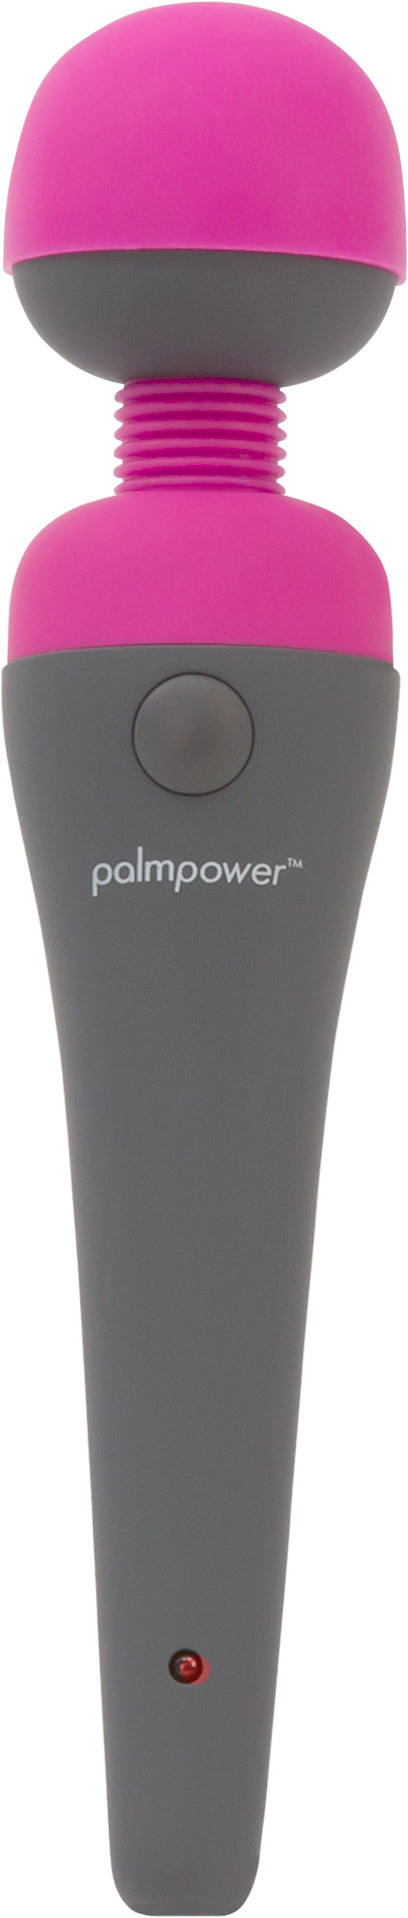 PalmPower Massage Wand